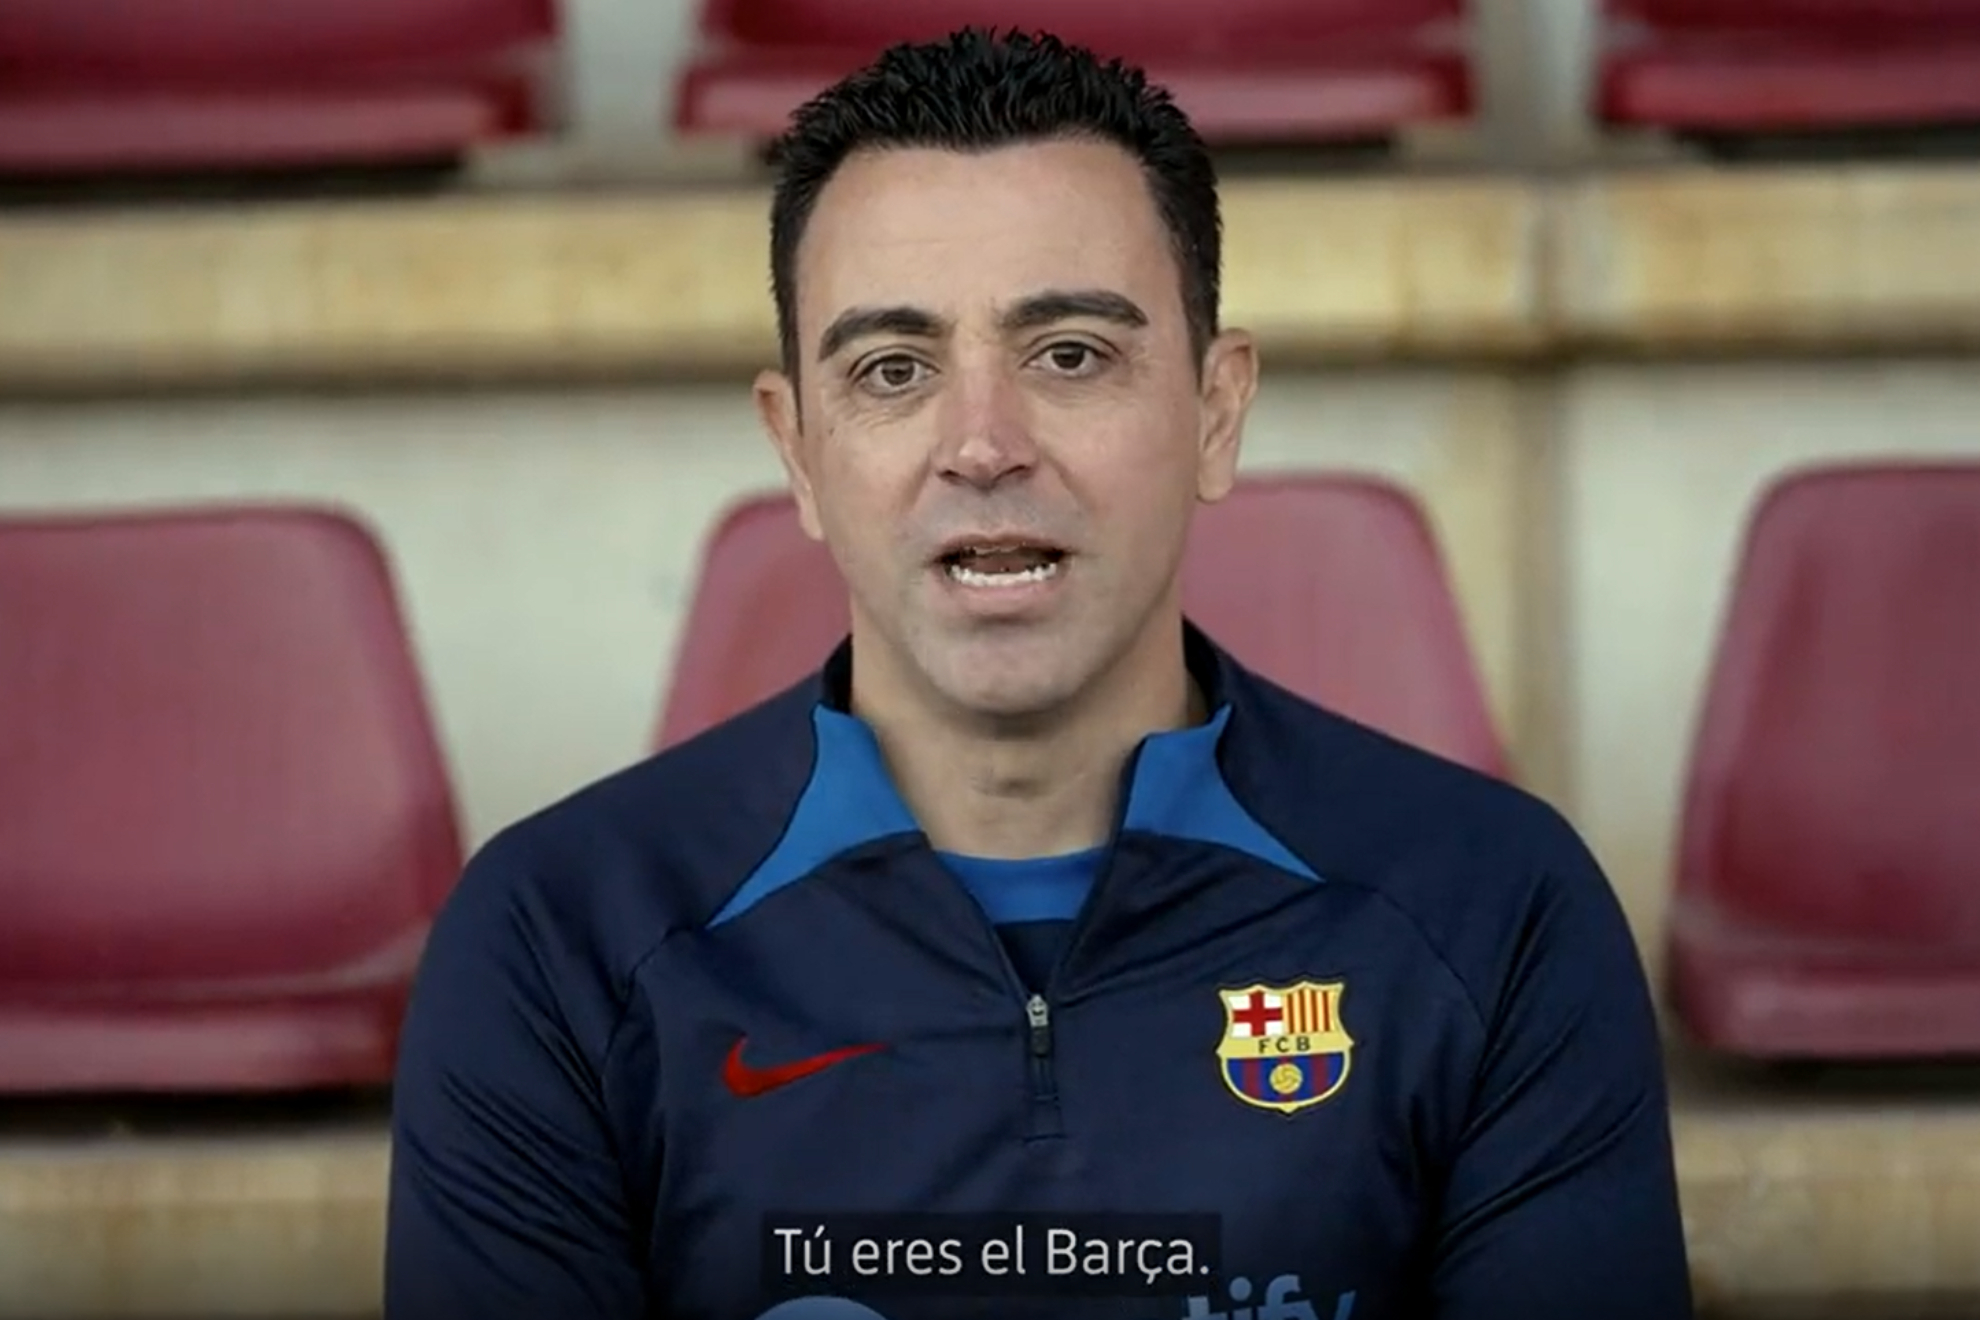 El mensaje de Xavi a los culés: "Tú eres el Barça"